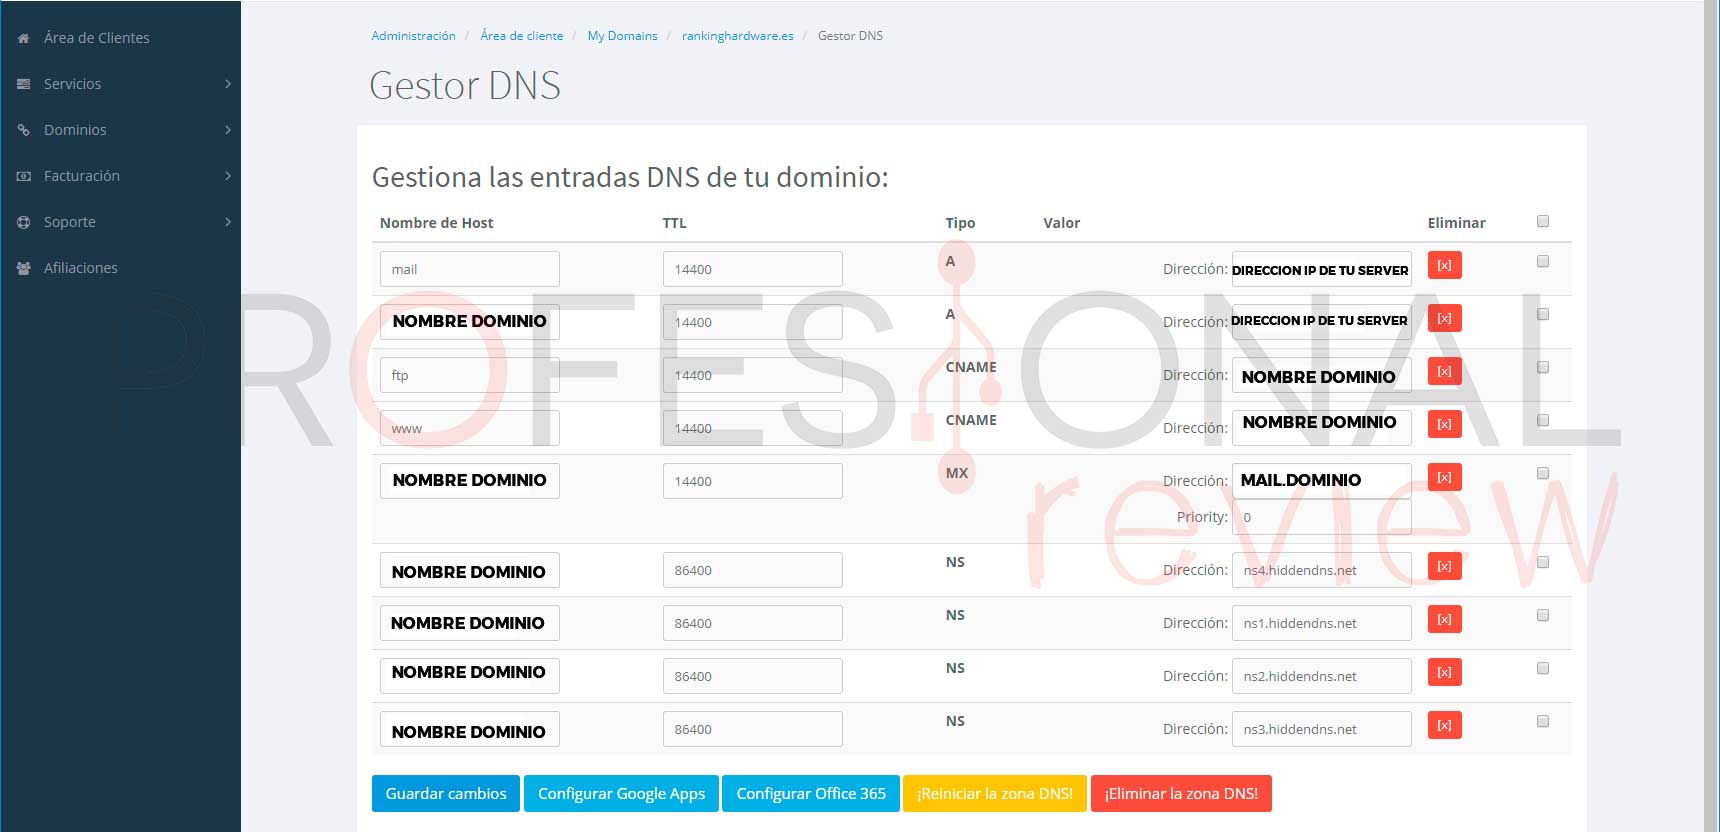 Gestión DNS panel